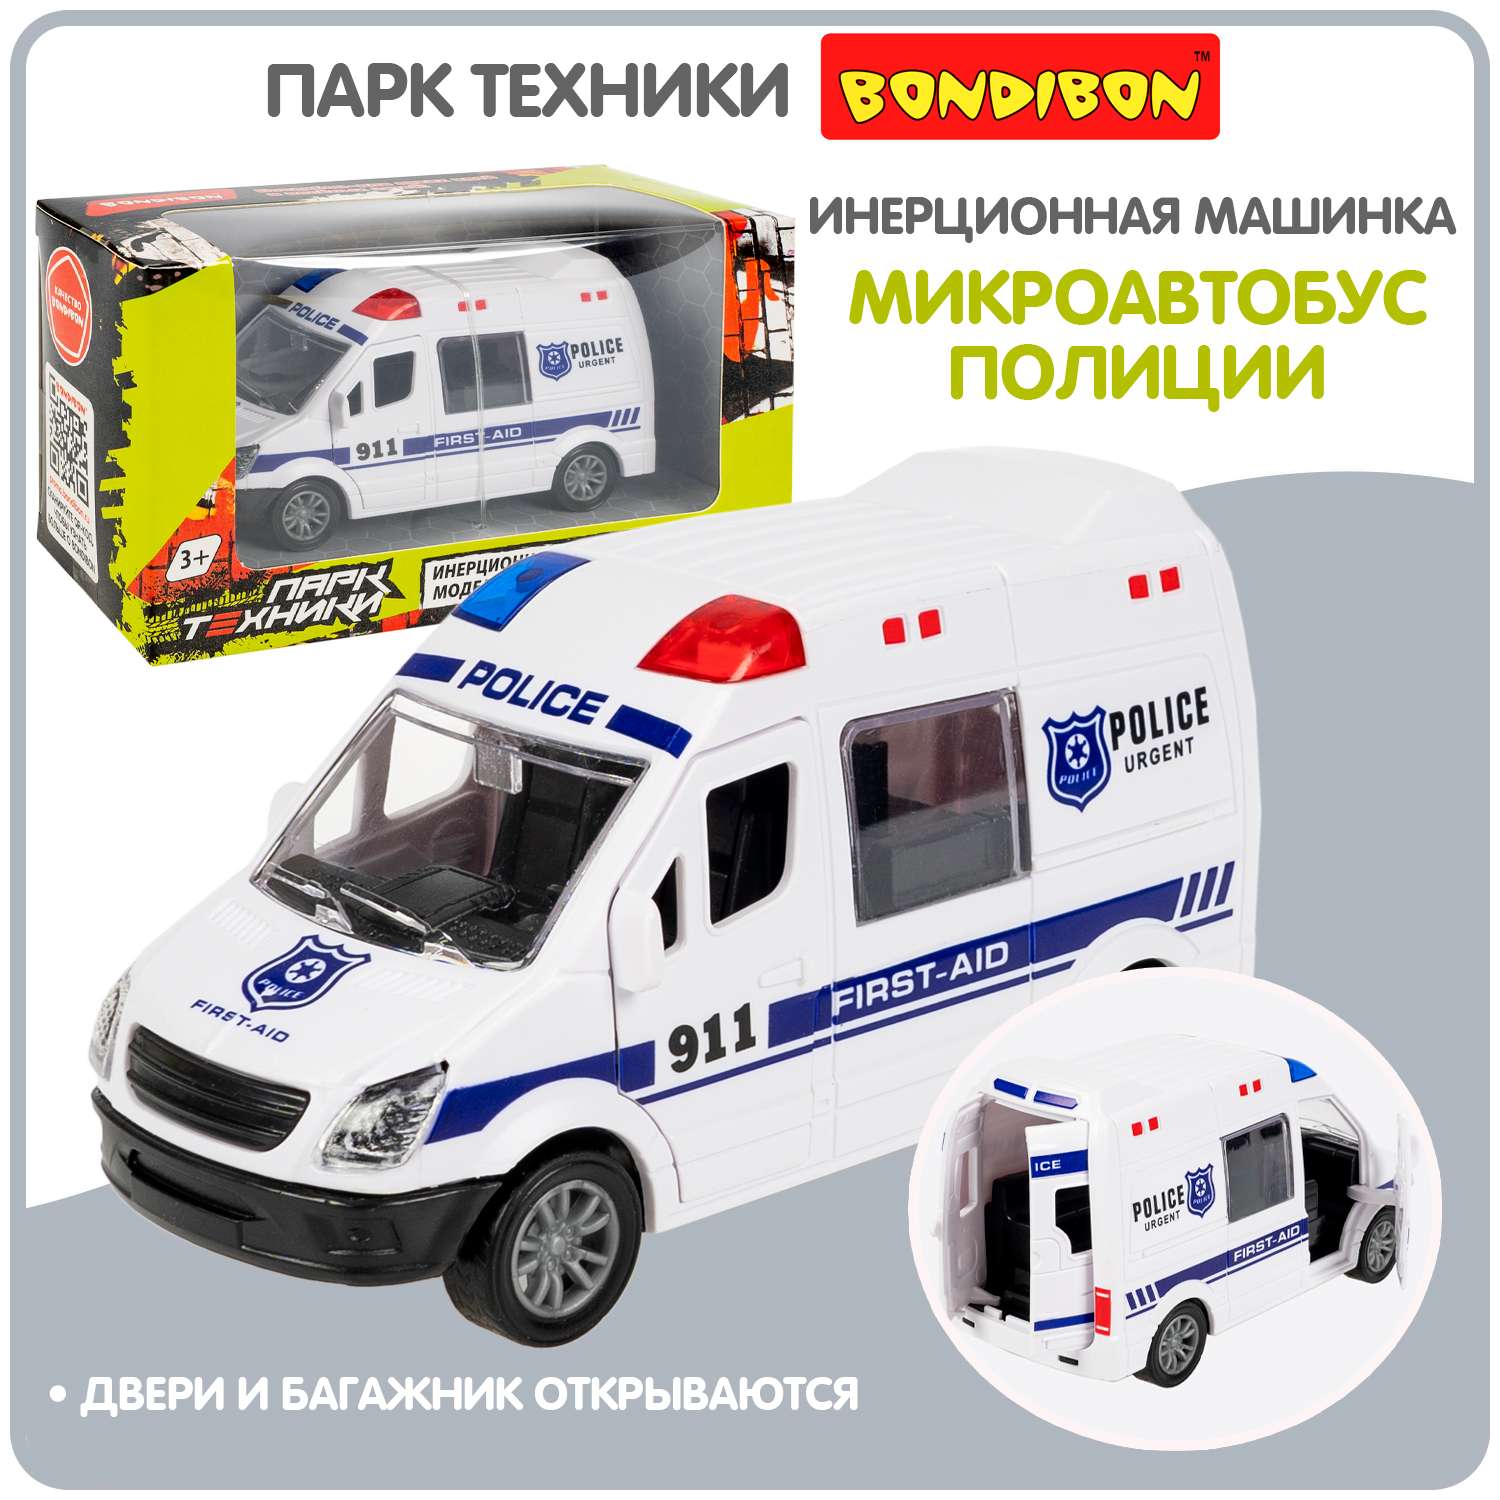 Инерционная машина BONDIBON Микроавтобус полиции серия Парк Техники ВВ6179 - фото 1